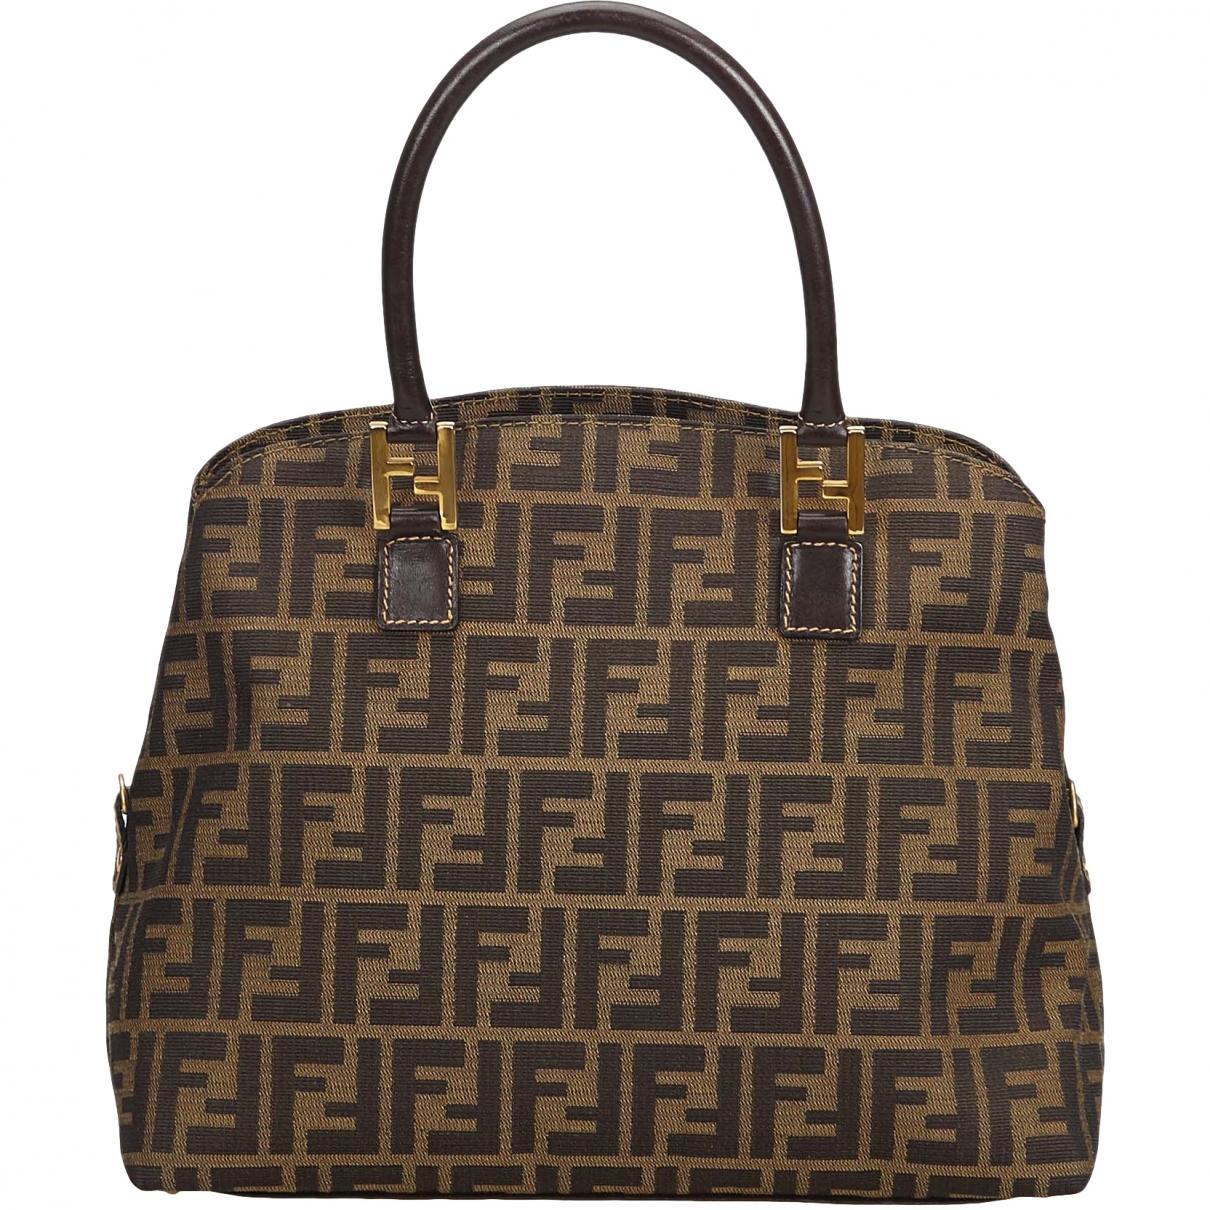 Lyst - Fendi Cloth Handbag in Brown